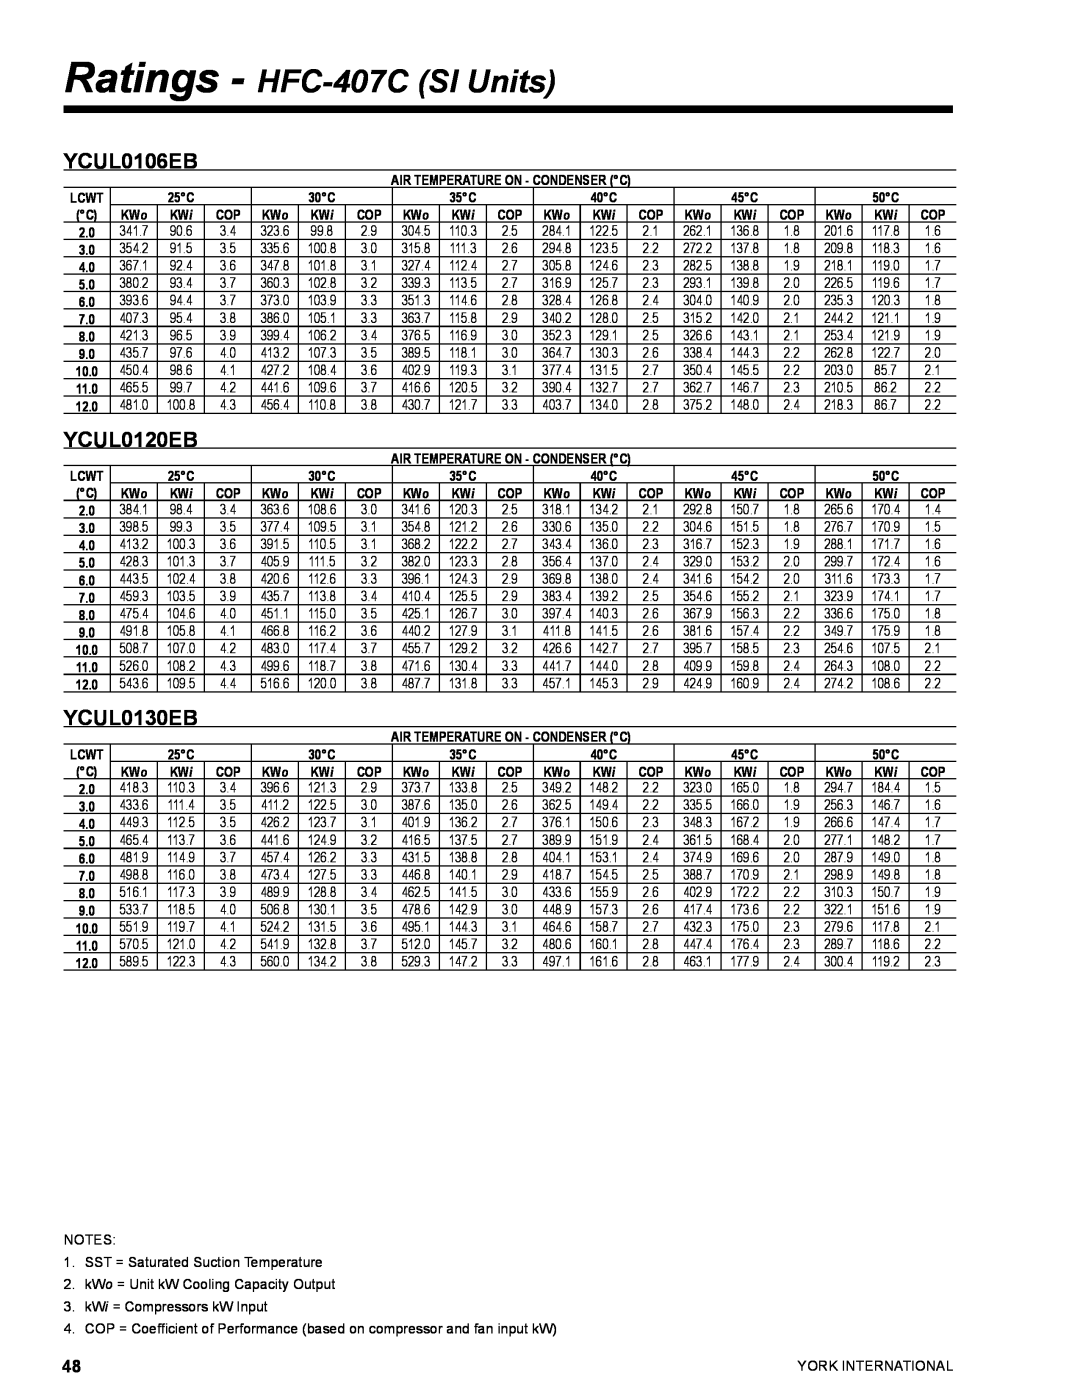 York YCUL0016 manual Ratings - HFC-407CSI Units, YCUL0106EB, YCUL0120EB, YCUL0130EB, 341.7 